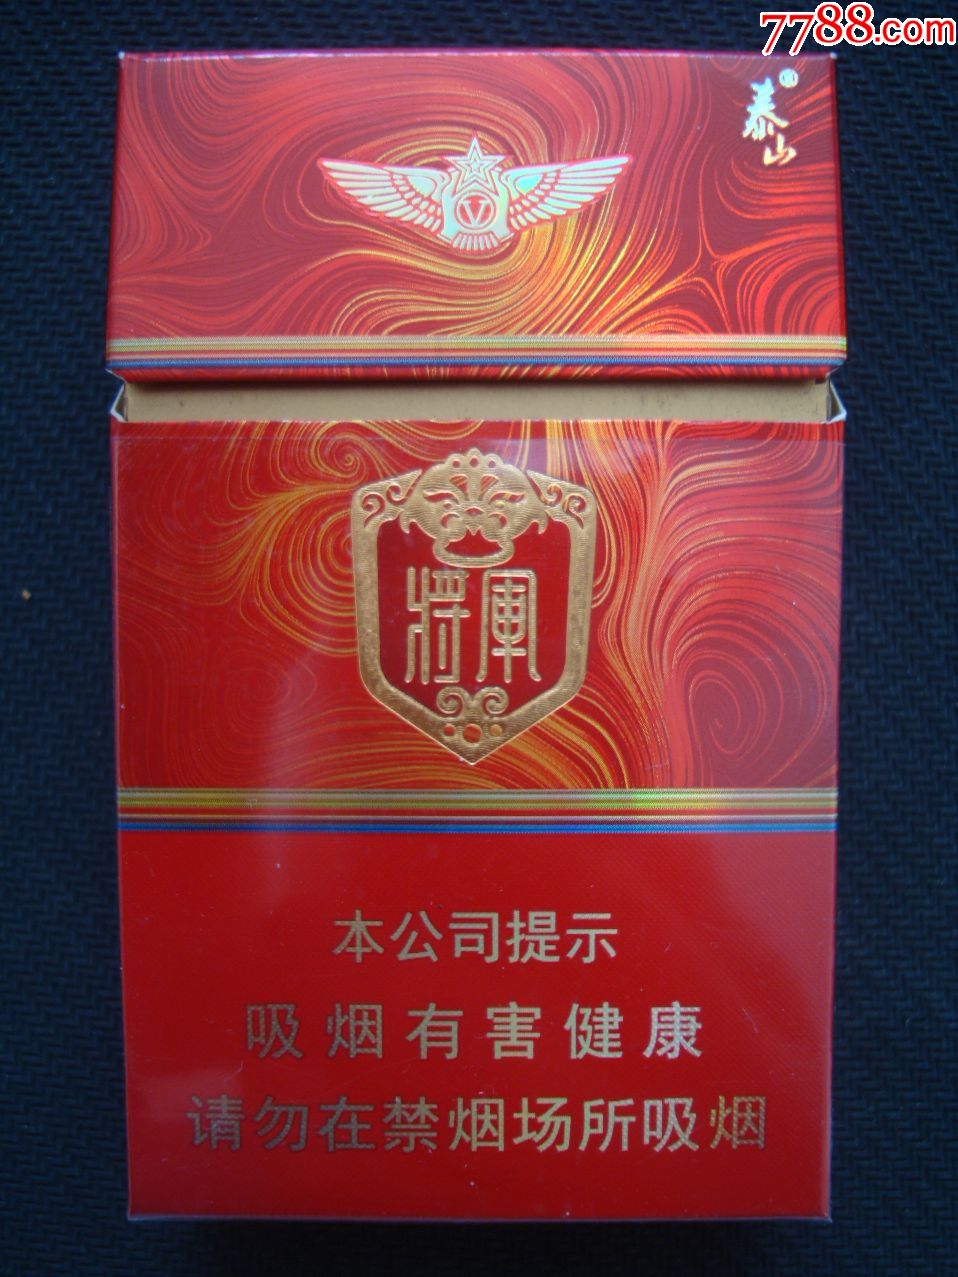 泰山――将军,烟标/烟盒